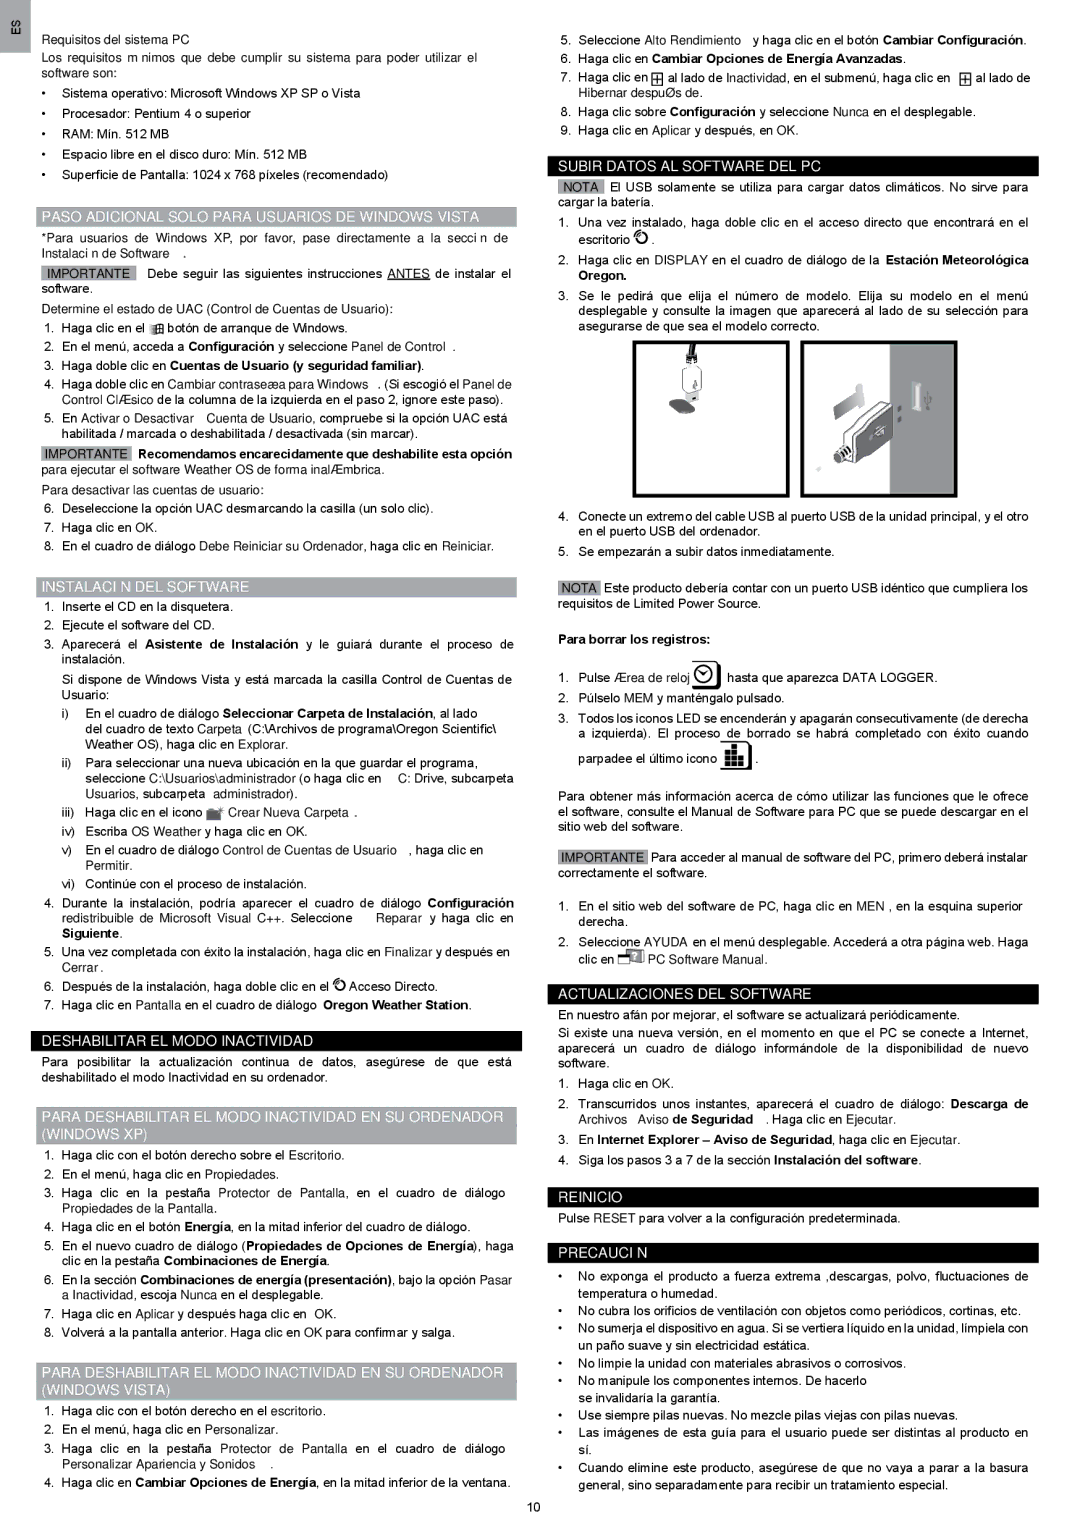 Oregon Scientific WMR200 manual Paso Adicional Solo Para Usuarios DE Windows Vista, Instalación DEL Software, Reinicio 